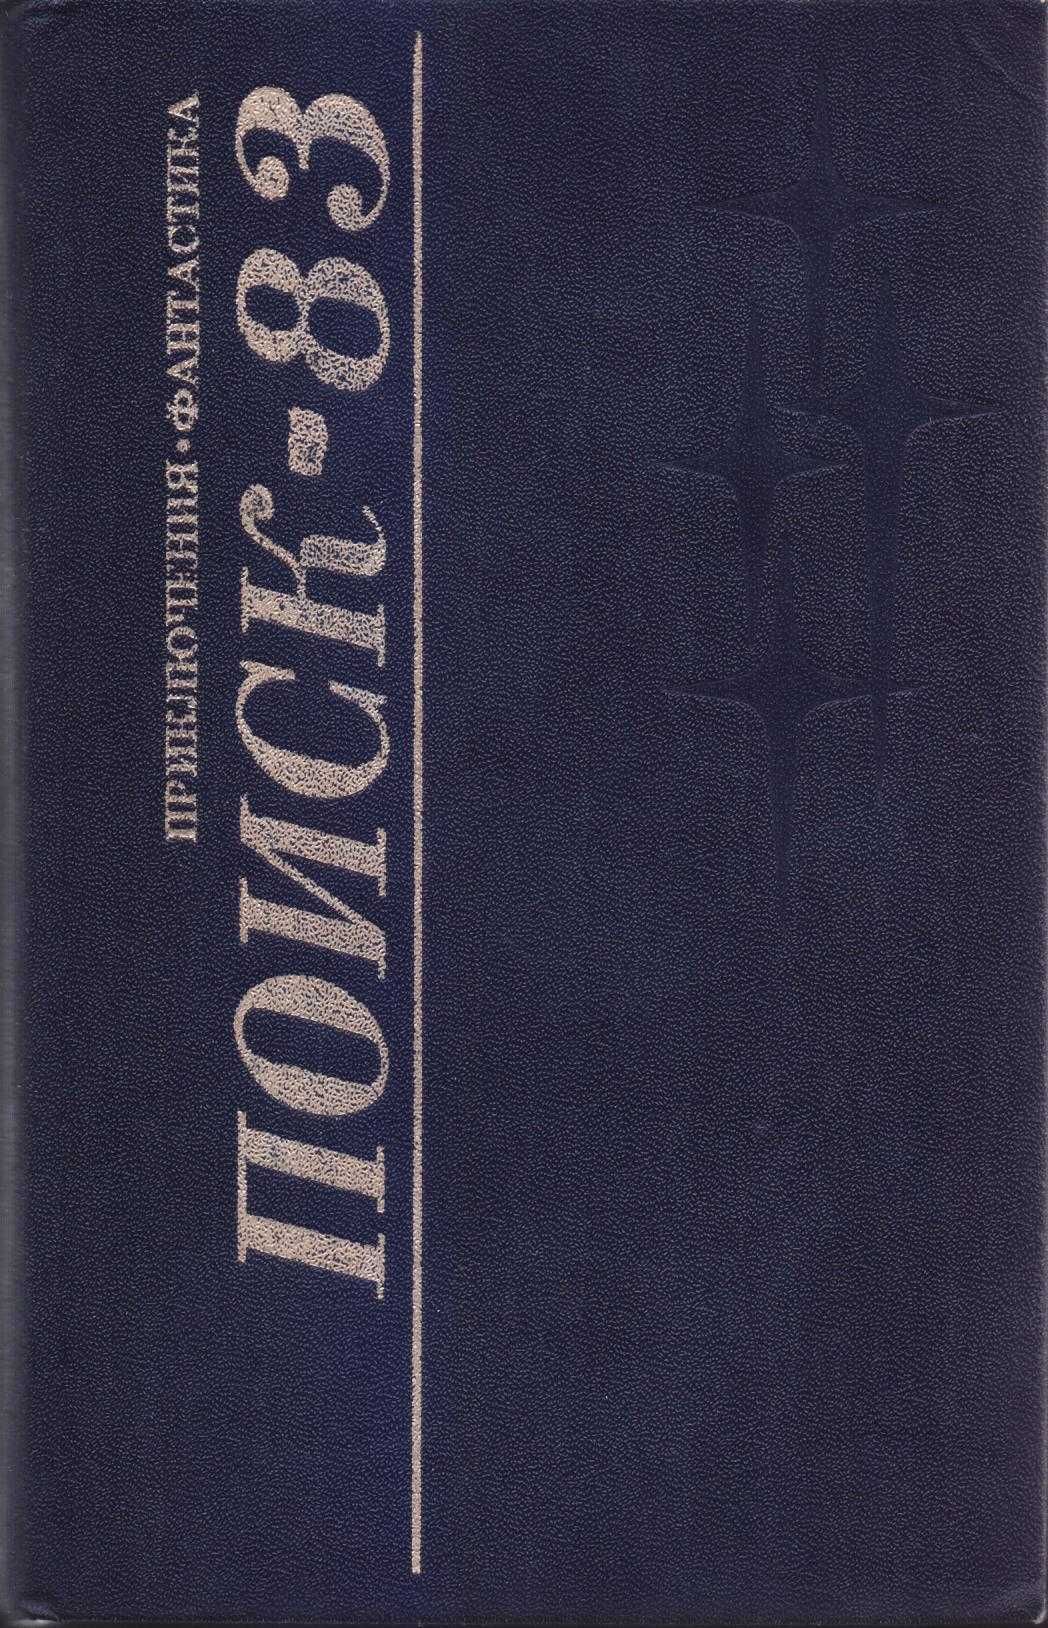 Альманах Поиск 81, 82, 83, ежегодник, сборник фантастики и приключений